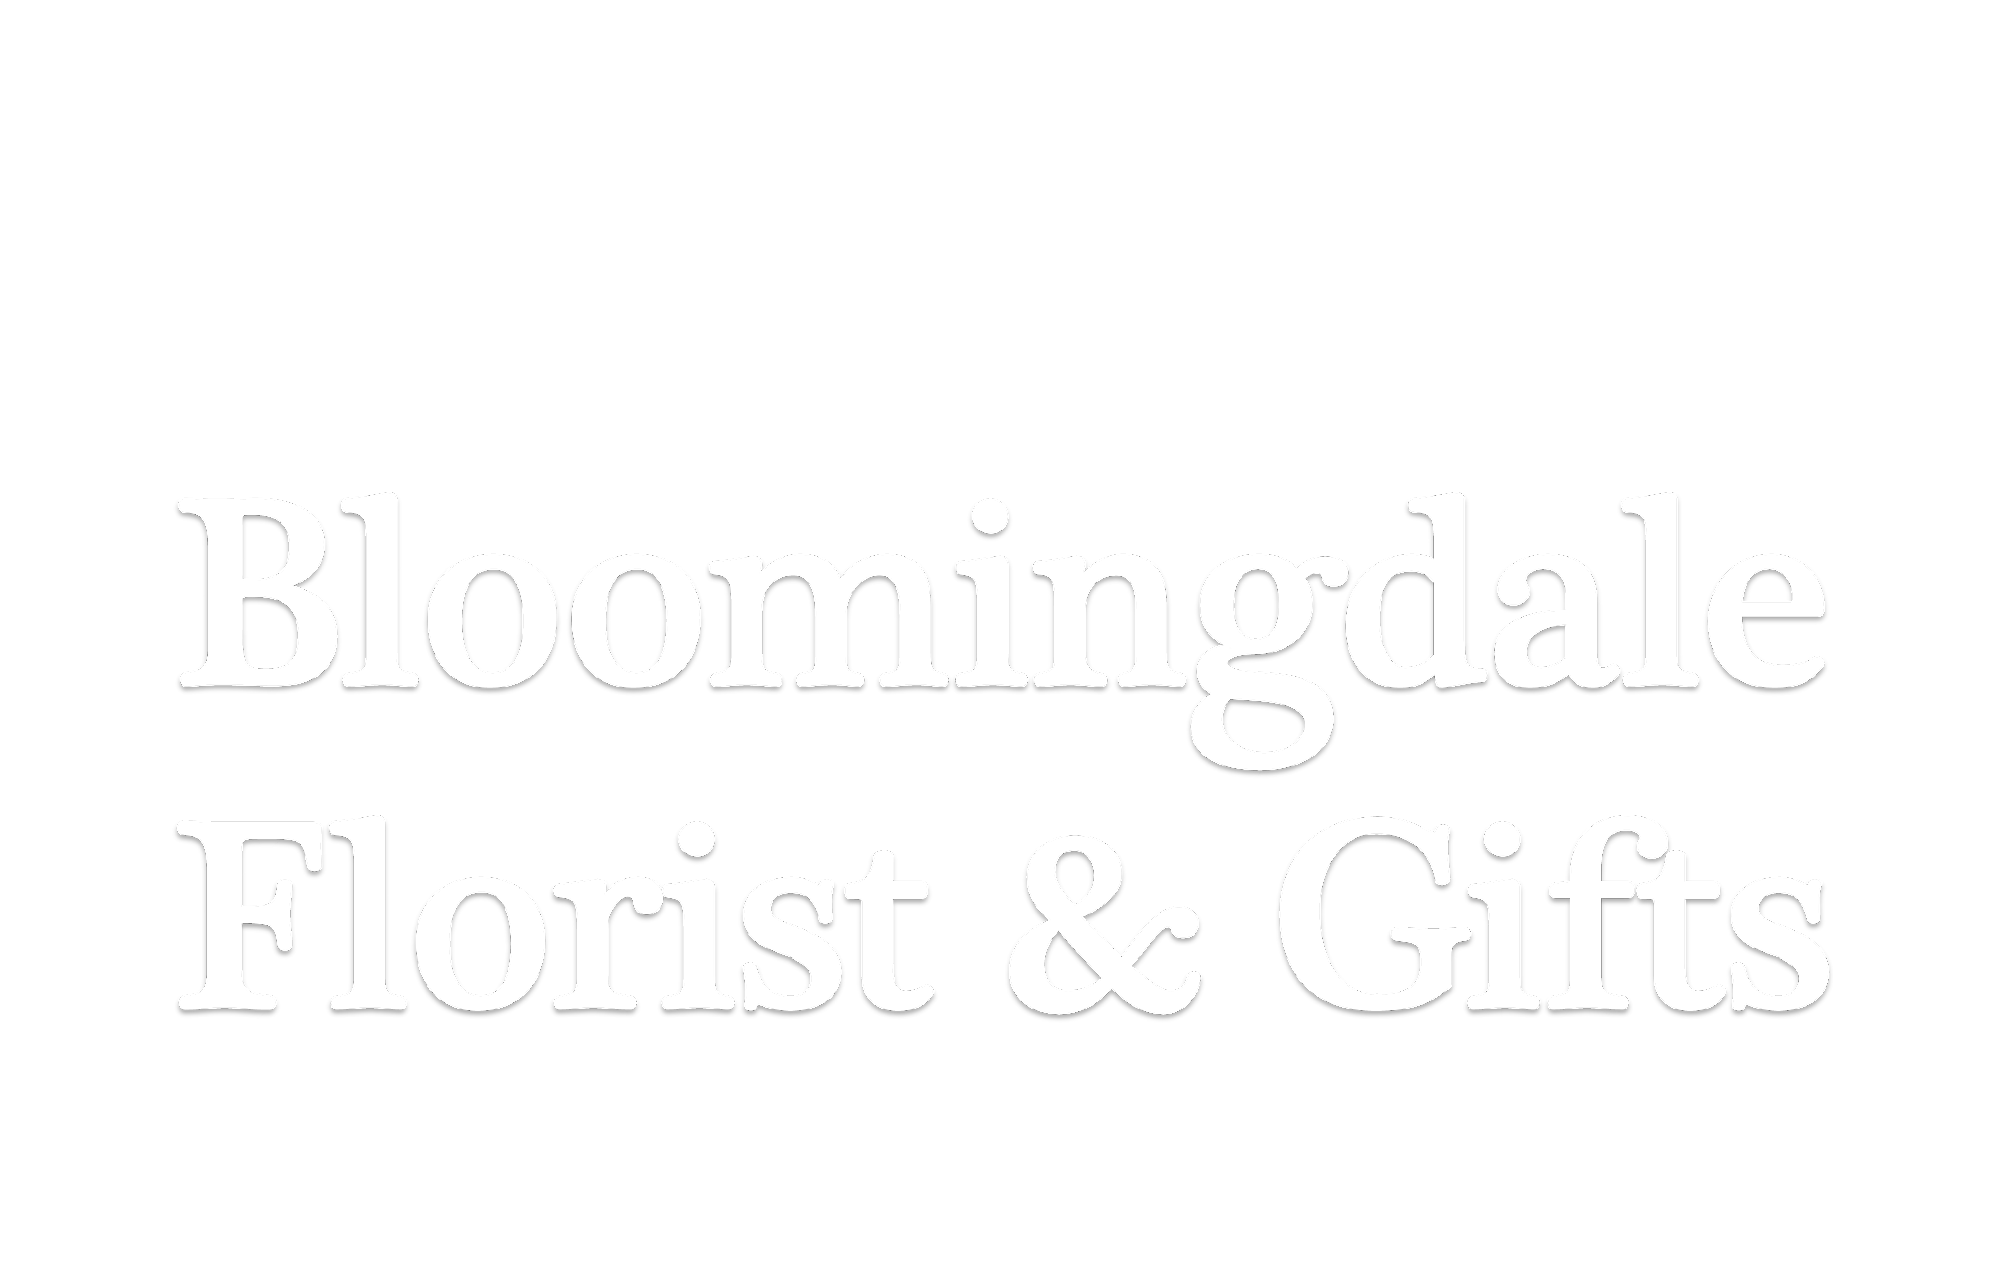 Bloomingdale Florist & Gifts